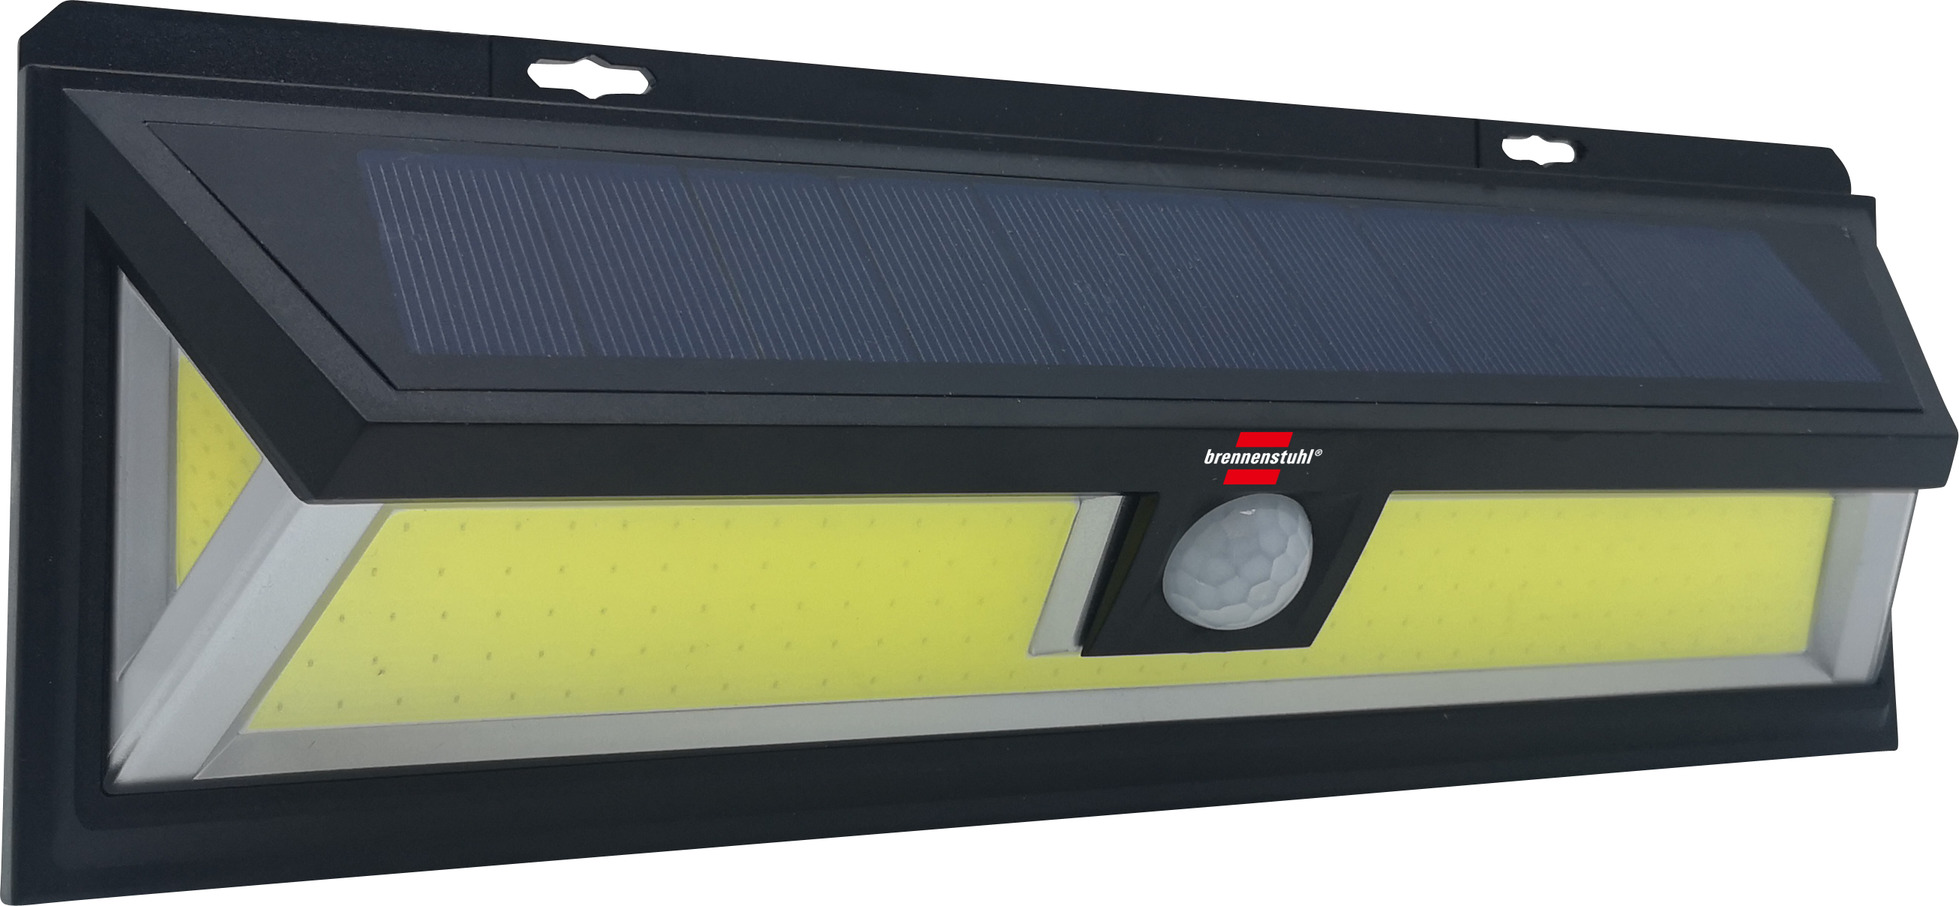 Solar LED-Wandleuchte 700 COB LED mit 10W, WL brennenstuhl® Bewegungsmelder, PIR IP65, | SOL schwarz 700lm